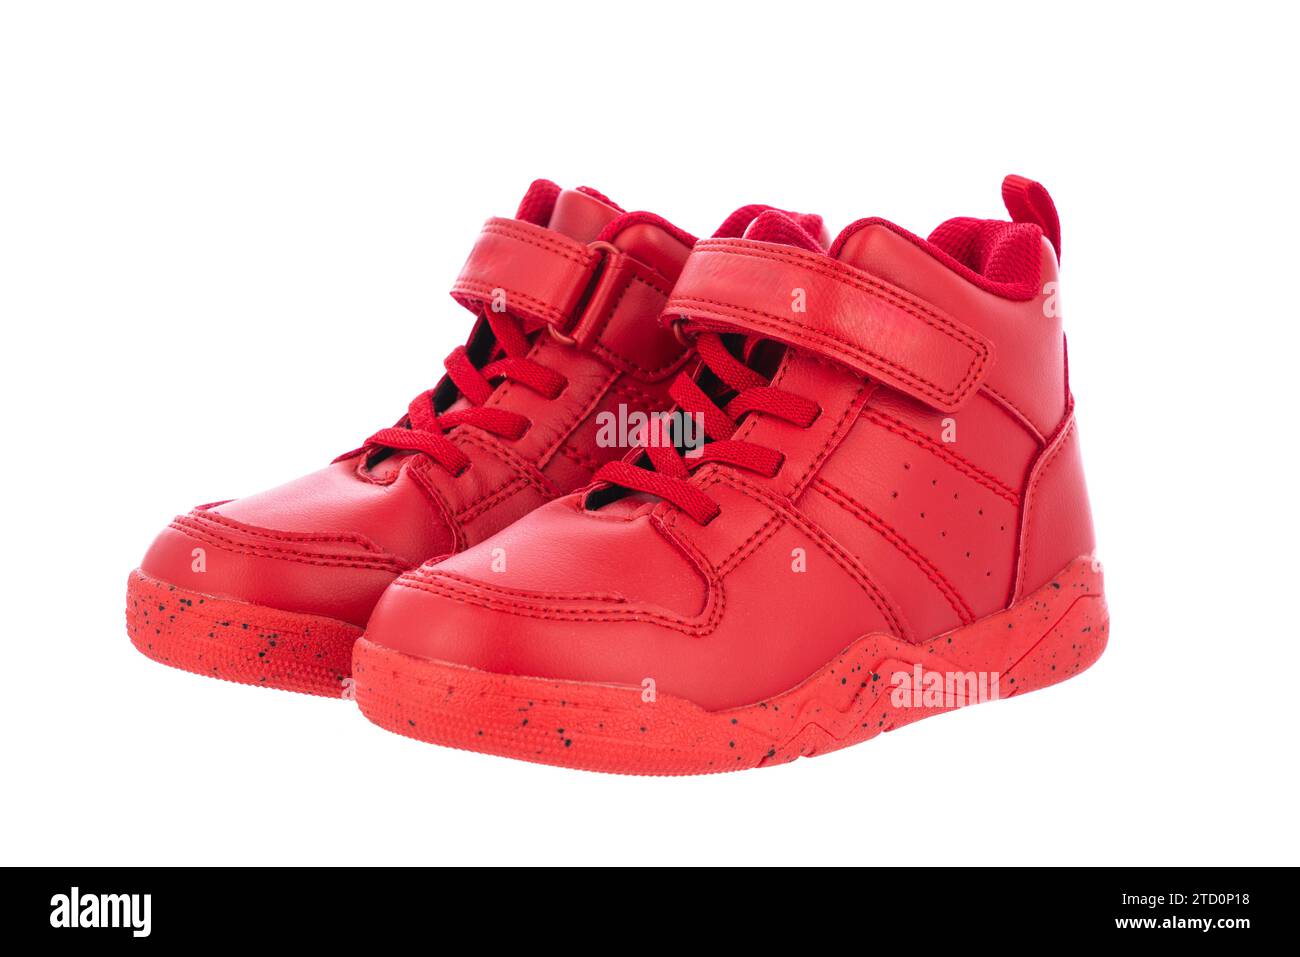 Scarpe sneaker per bambini in pelle rossa isolate su sfondo bianco Foto Stock